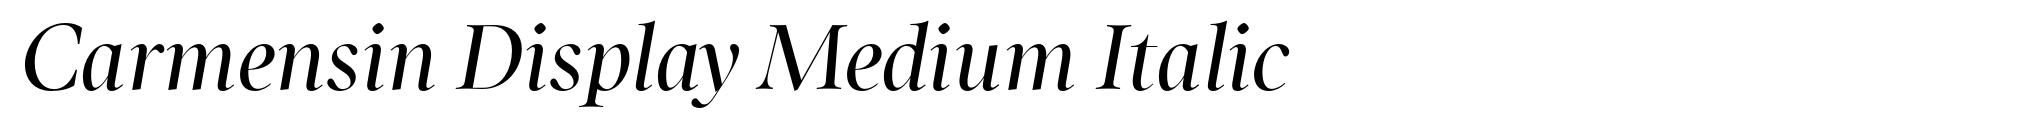 Carmensin Display Medium Italic image